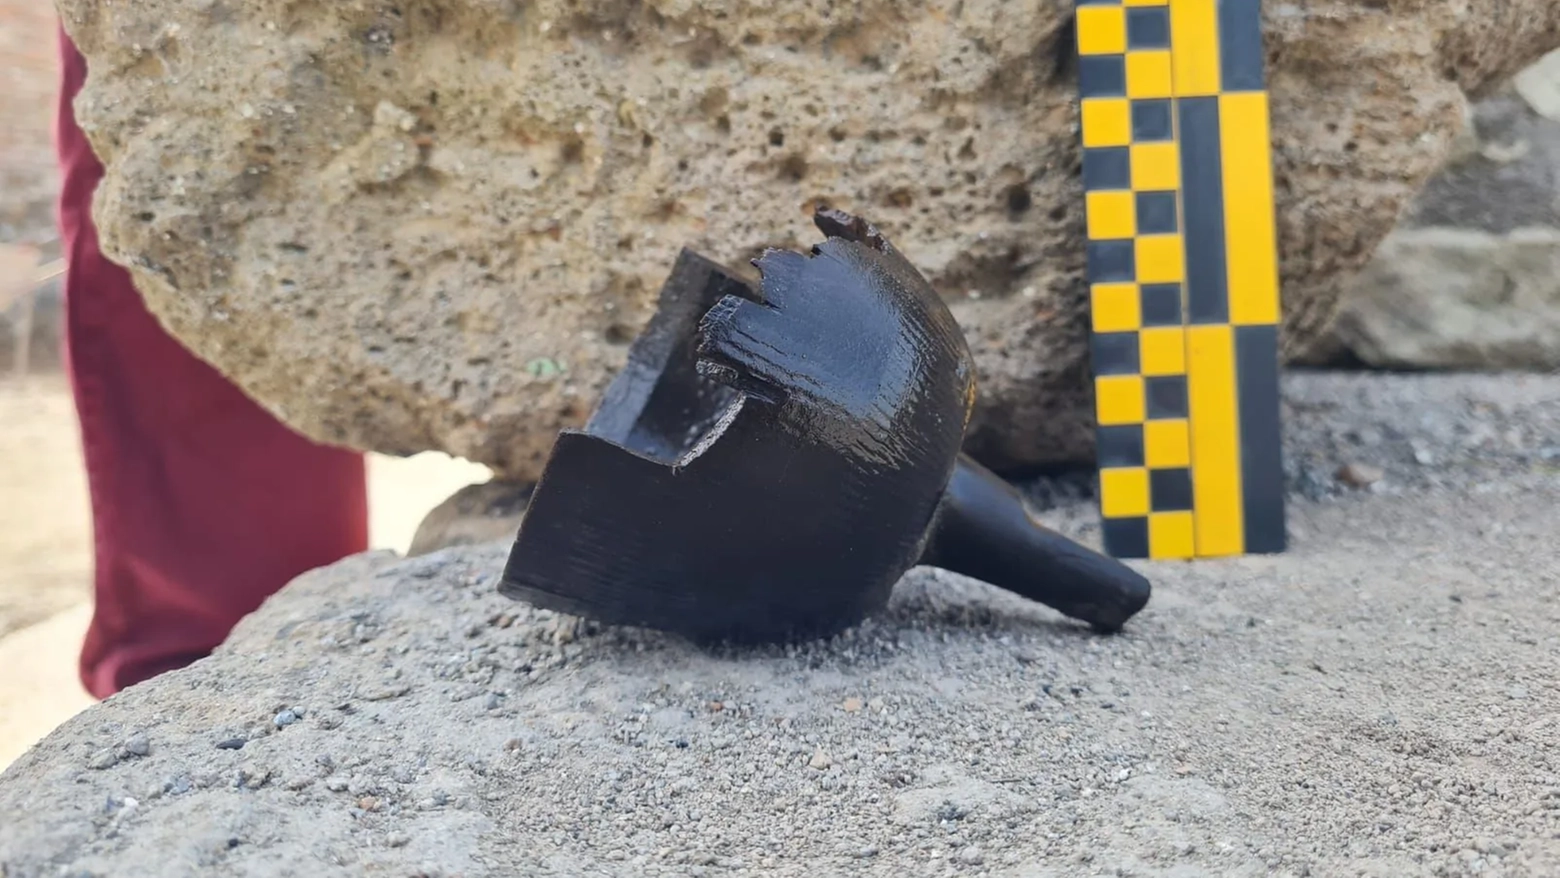 Uno degli oggetti rinvenuti del Parco archeologico di Ostia antica durante alcuni scavi (foto dal sito del parco)